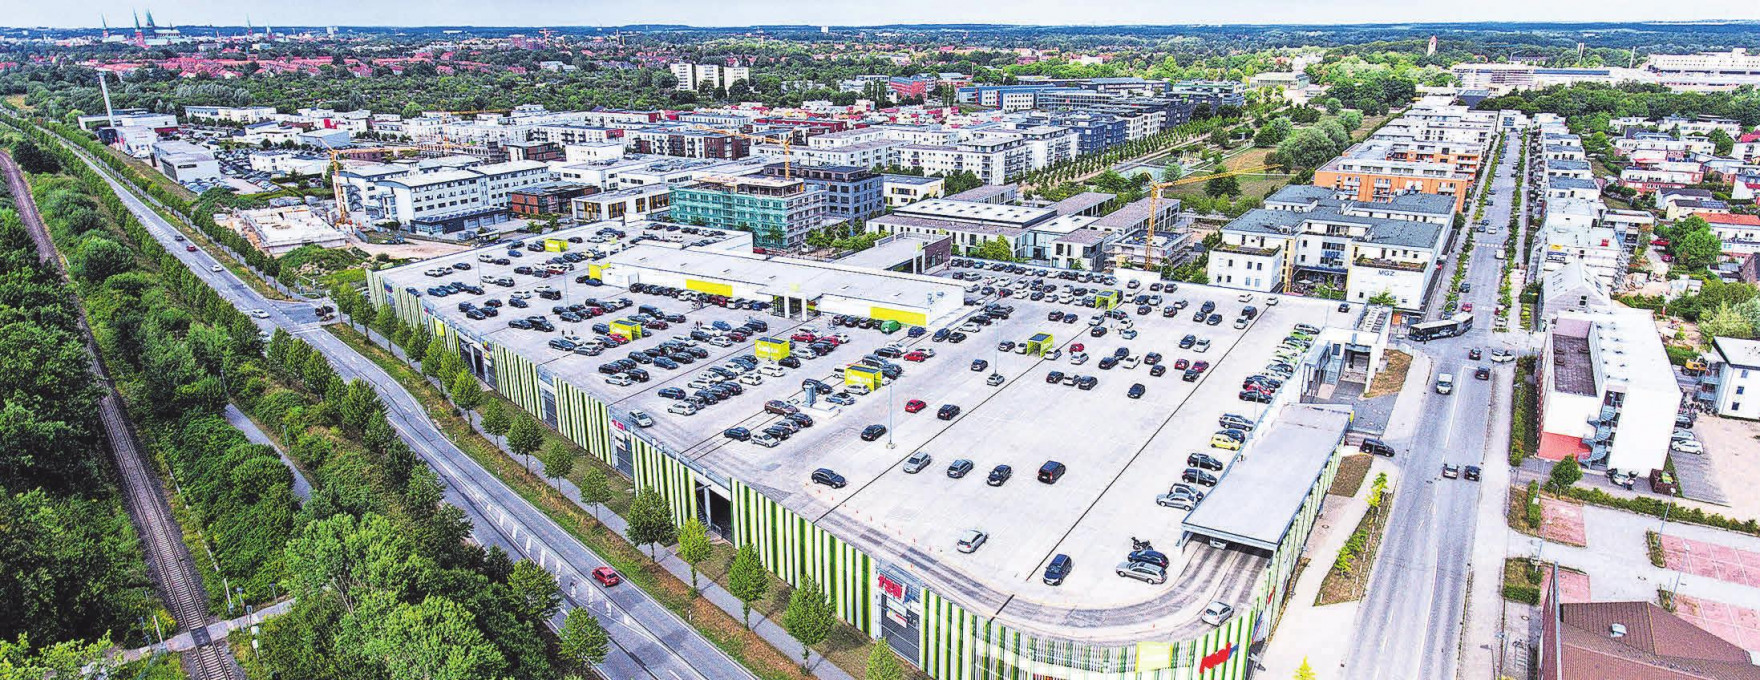 Bequemes Einkaufen: Im Campus Center stehen für die Kunden über 600 kostenlose Parkplätze zur Verfügung. Foto: Campus Center Lübeck